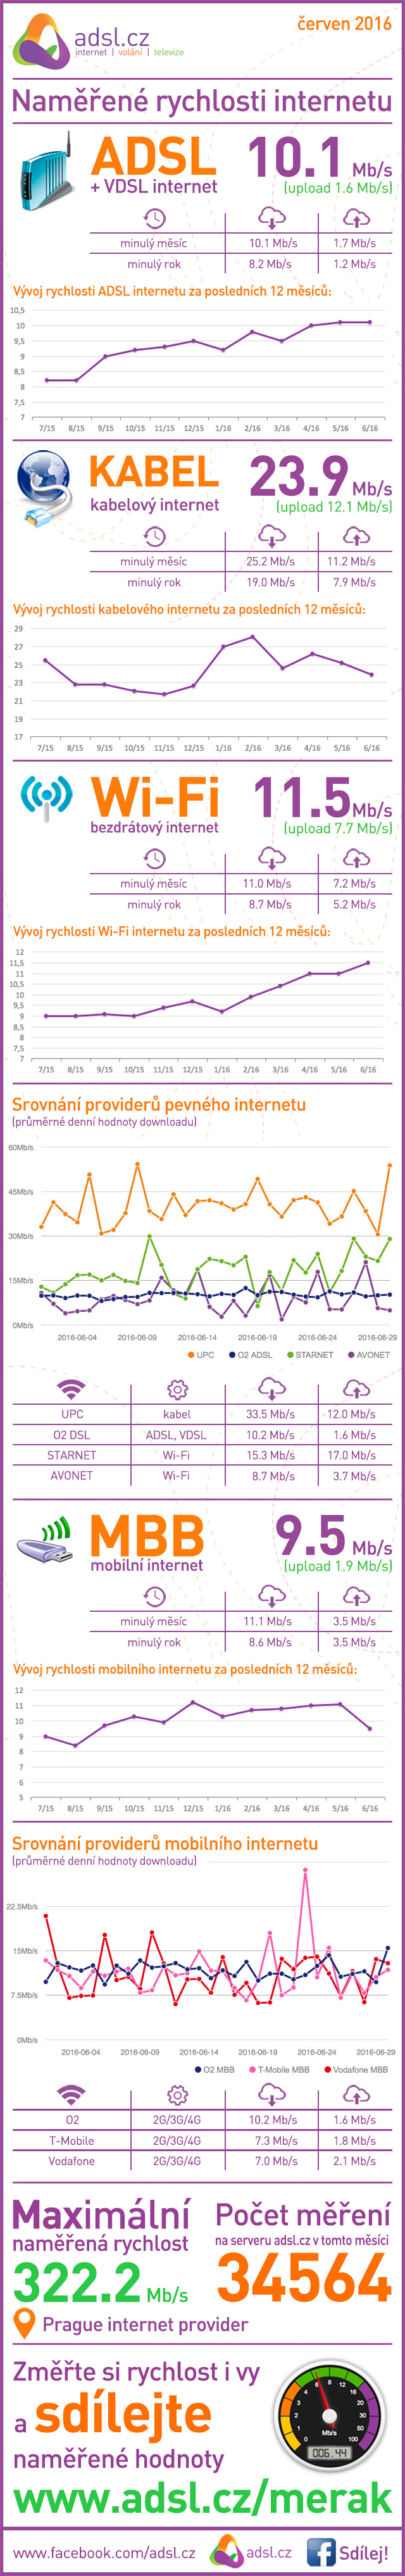 Rychlost internetu v červnu 2016 podle ADSl.cz